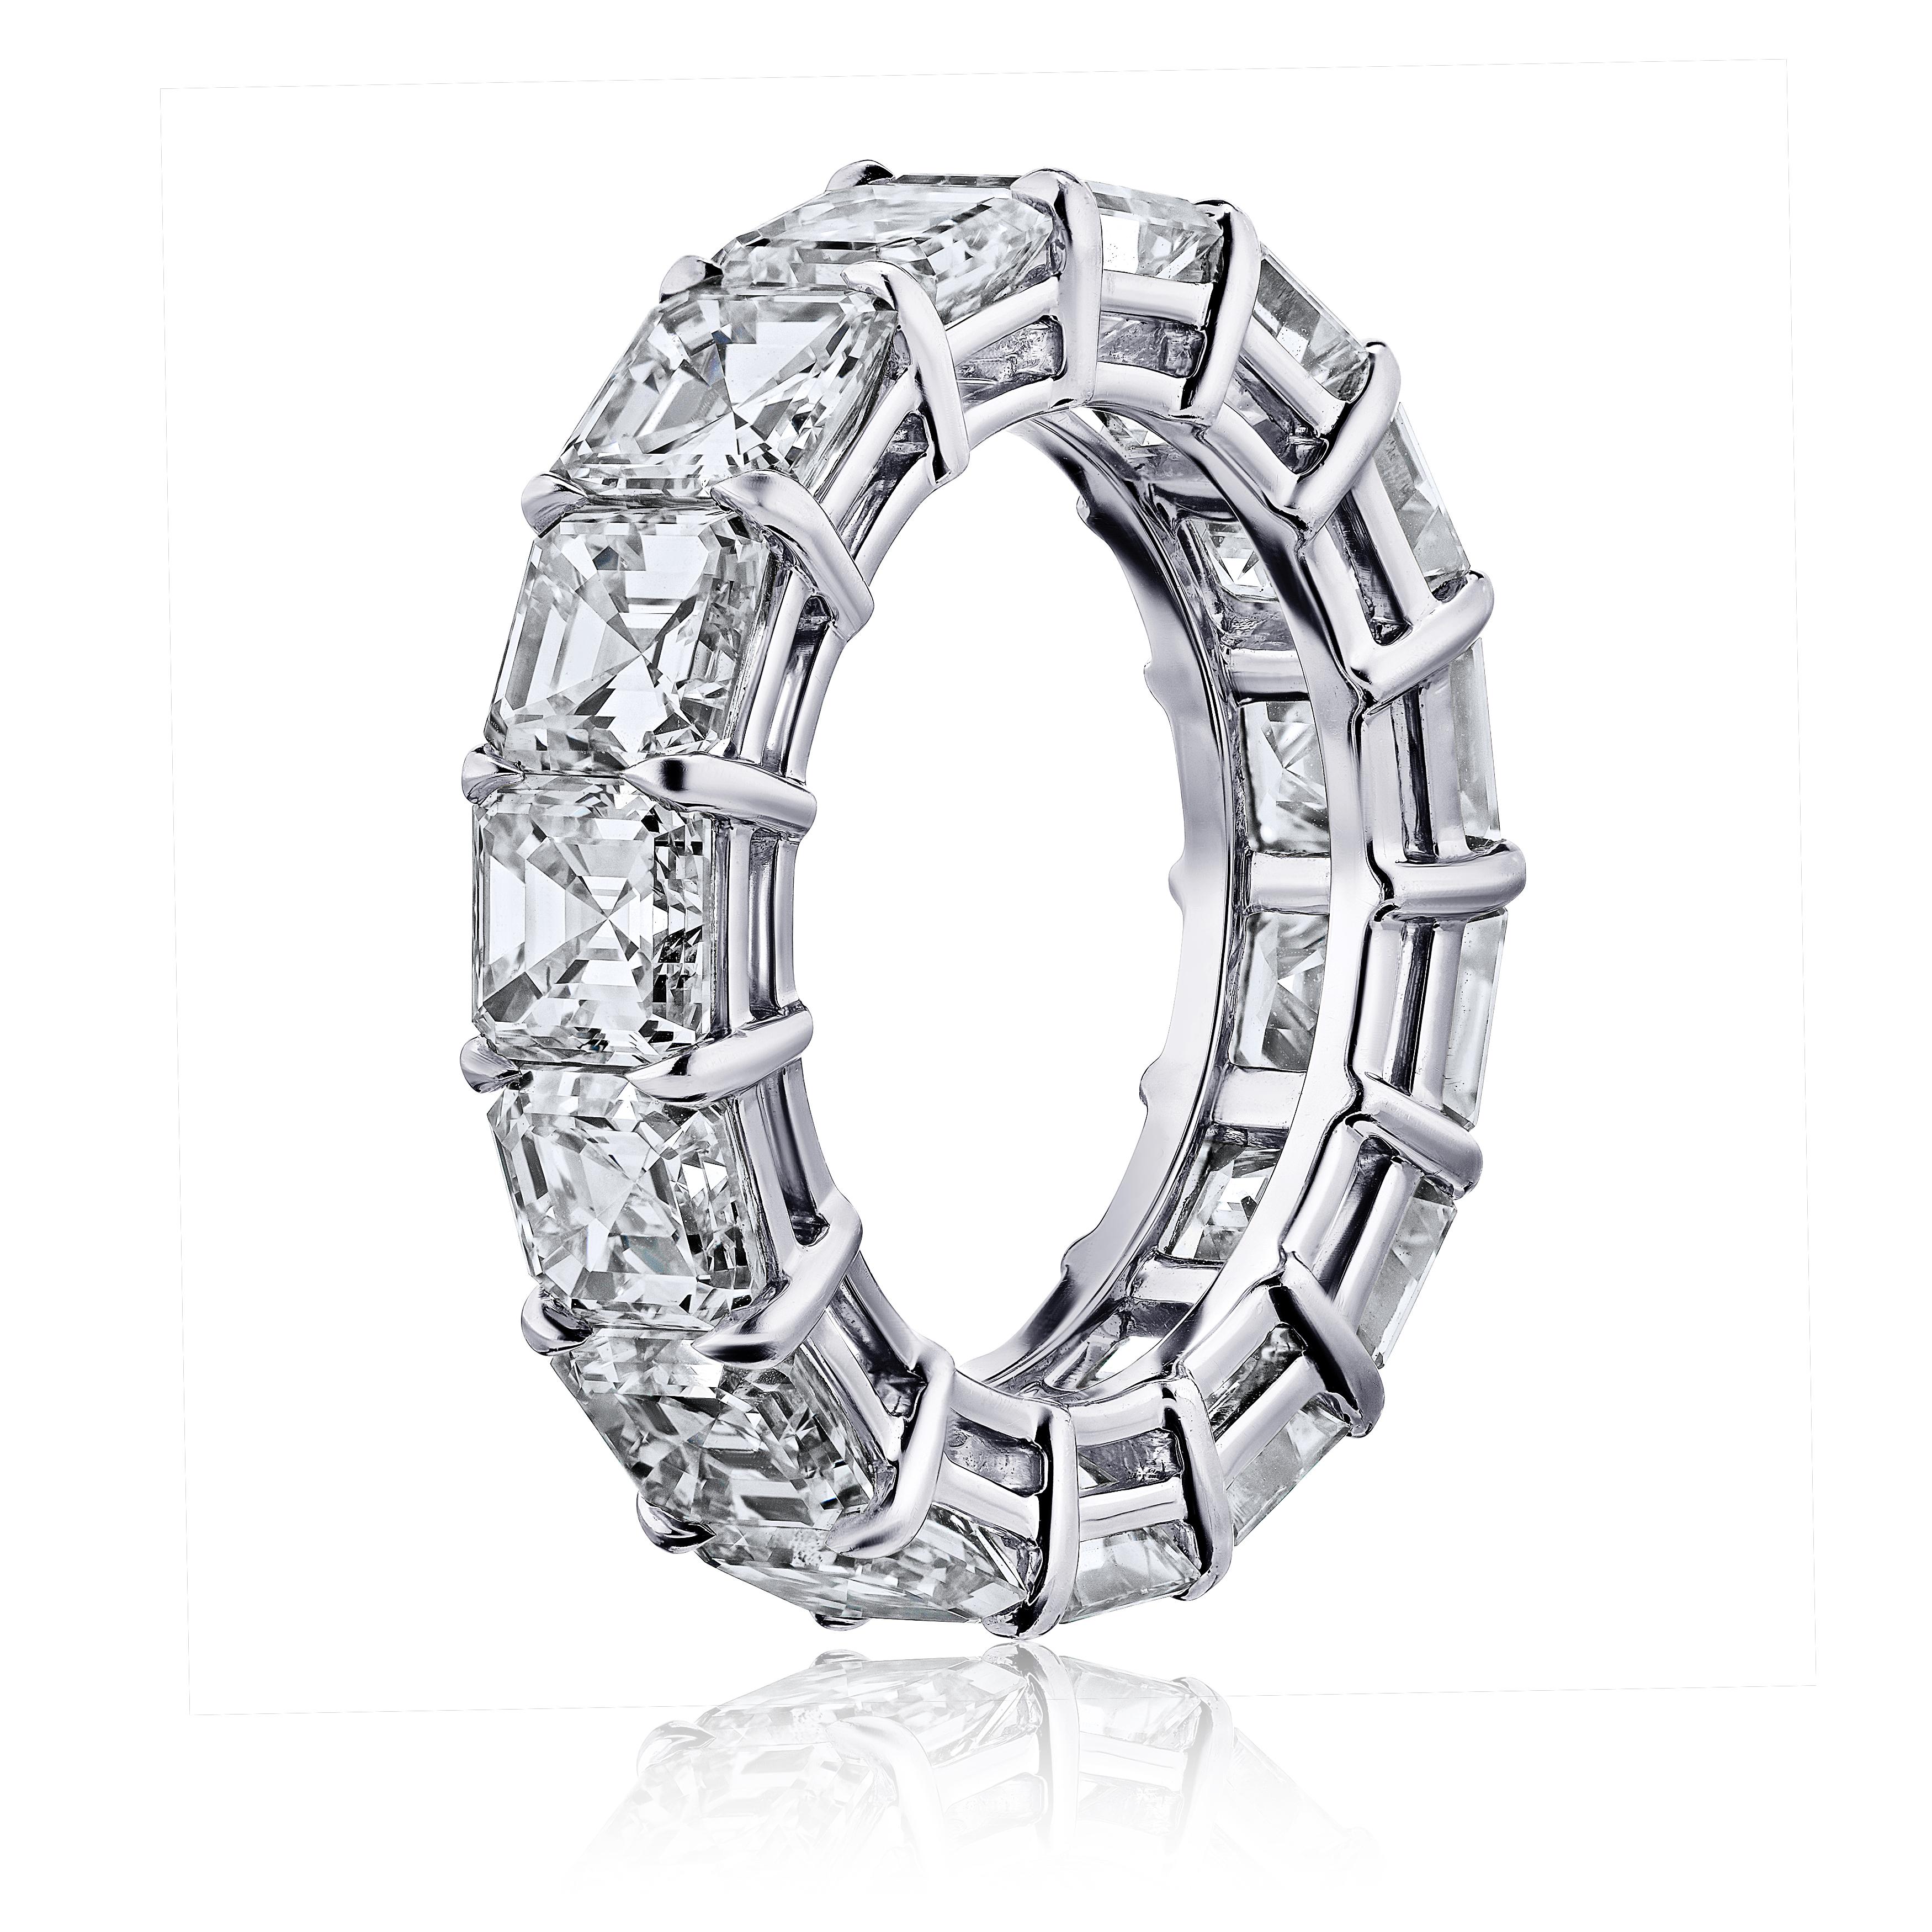 Asher Cut Diamantring Platin Ewigkeit Band geteilt Zinken Stil mit einer Galerie.
15 perfekt aufeinander abgestimmte Diamanten mit einem Mindestgewicht von 6,30 Karat. G.I.A.-Zertifikate für jeden Diamanten . Die Farben reichen von D-F. VVS1-VS2 in